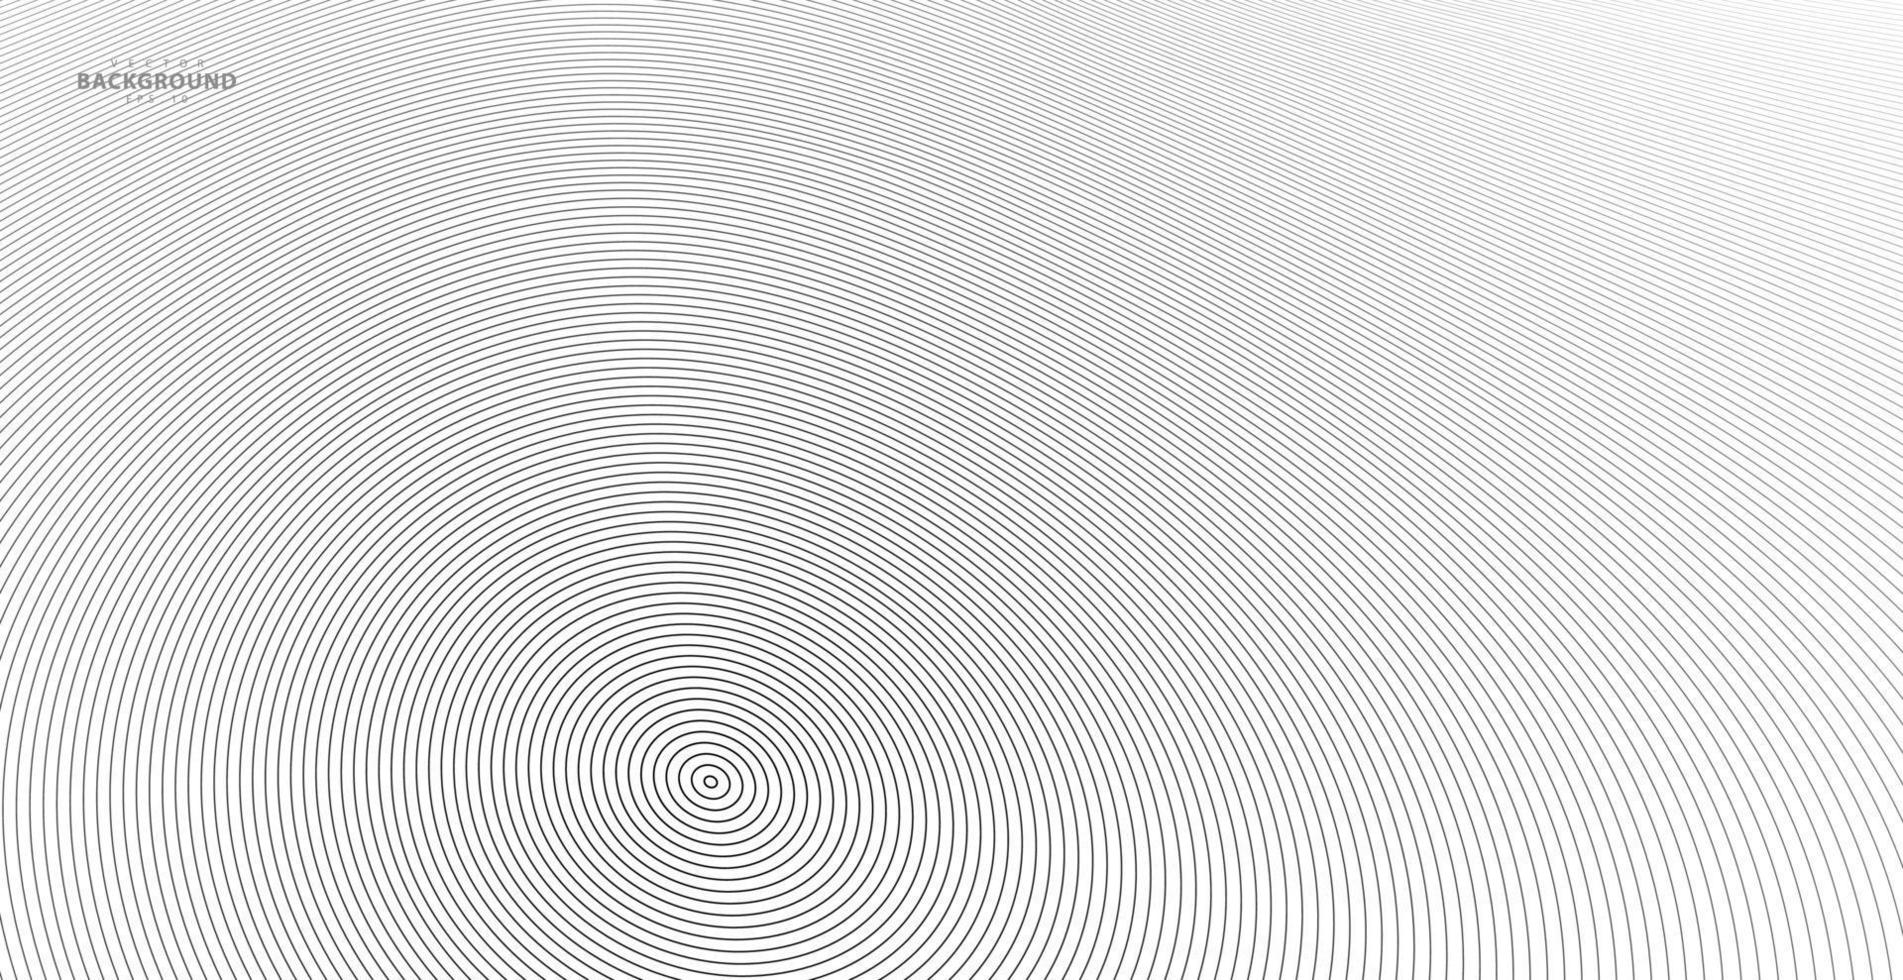 círculo concêntrico. ilustração para onda sonora. padrão de linha de círculo abstrato. gráfico preto e branco vetor